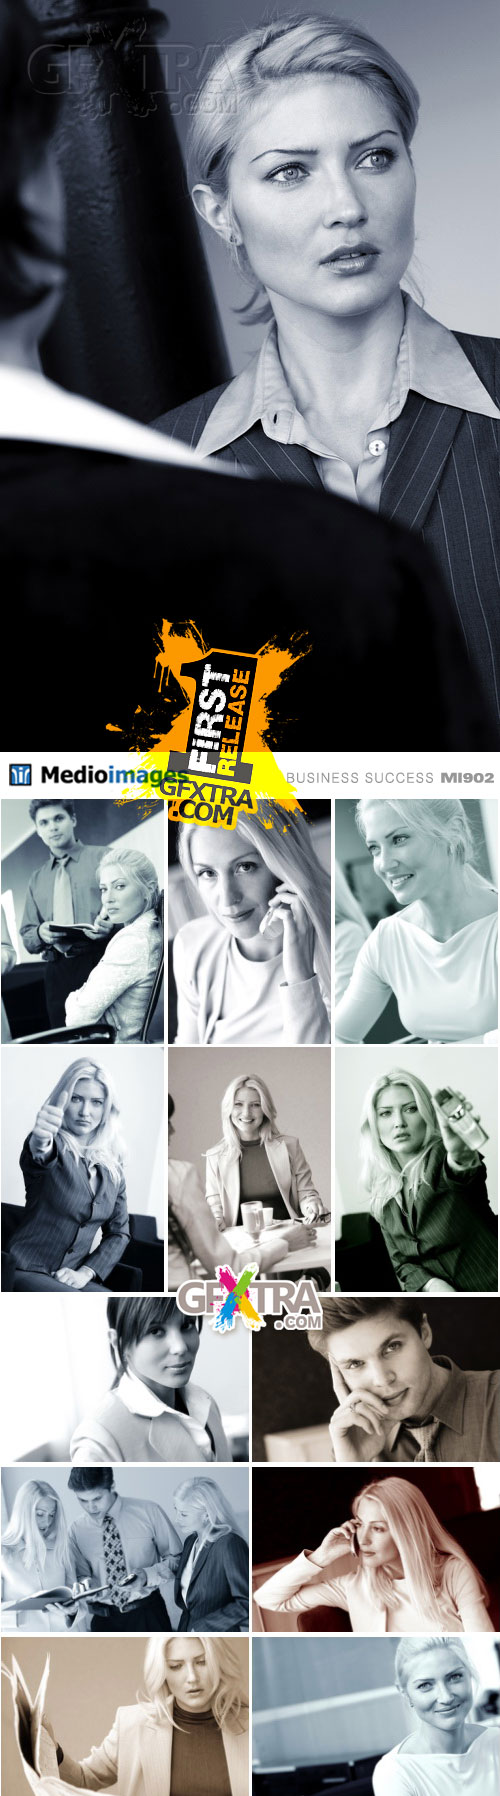 Medio Images MI902 Business Success